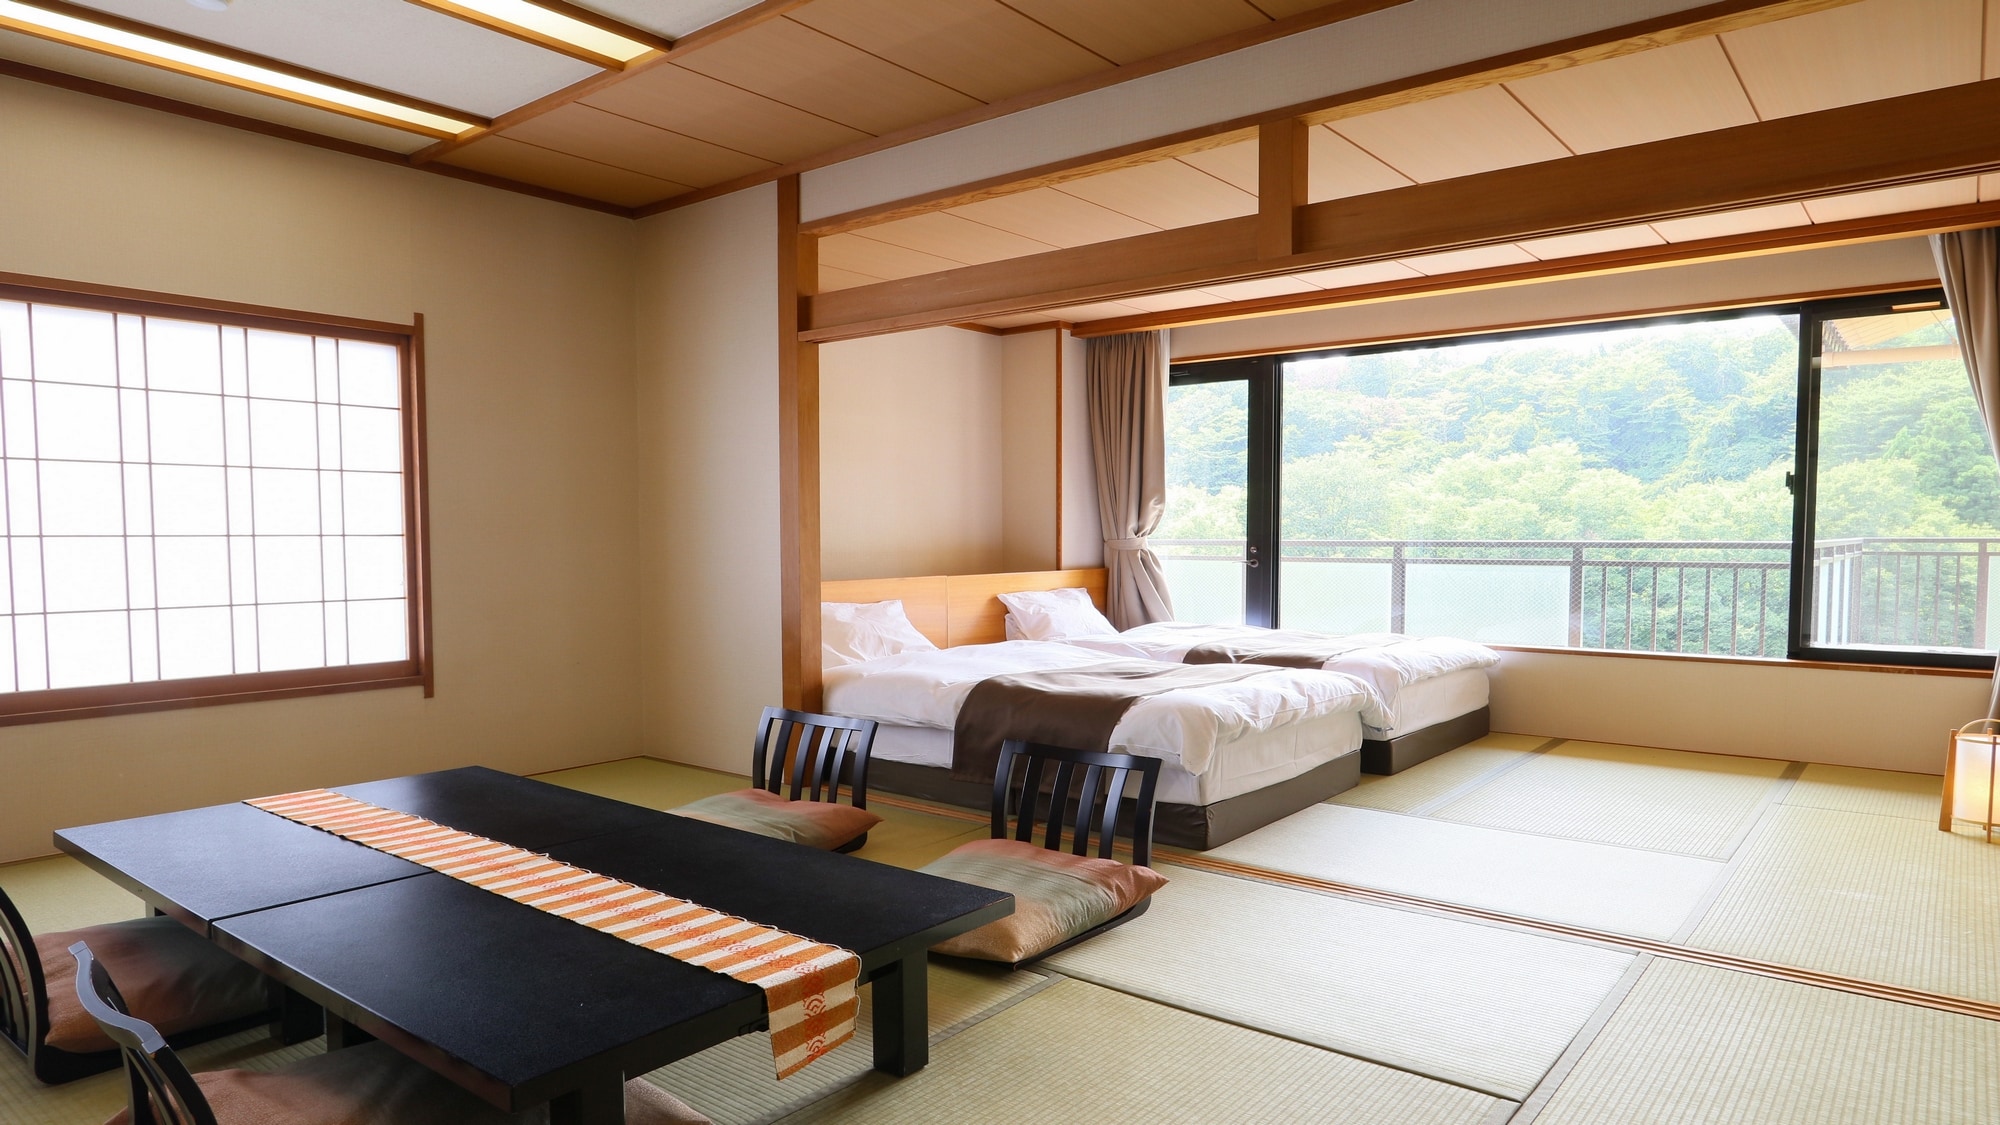 [ปลอดบุหรี่] ห้องพักแบบญี่ปุ่นและตะวันตก อาคารฝั่งตะวันตก เสื่อทาทามิ 10 ผืน + เสื่อทาทามิ 7.5 ผืนแฝด (มีอ่างอาบน้ำและห้องสุขา)